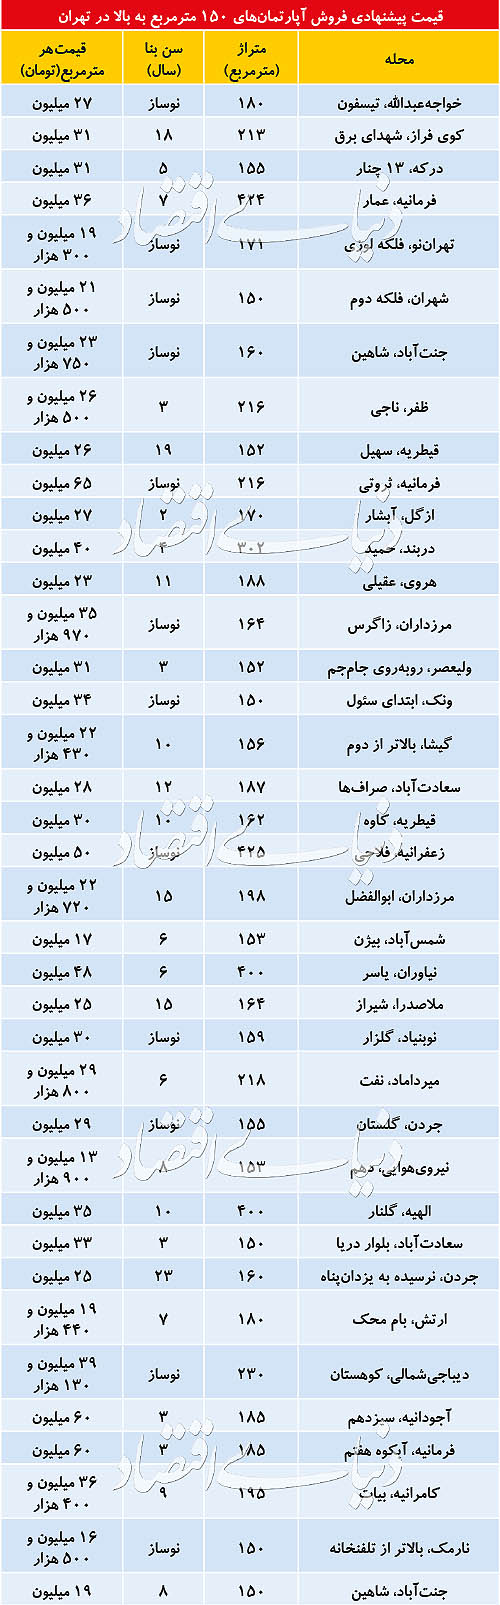 قیمت پیشنهادی فروش آپارتمان های 150 متر مربع به بالا در تهران